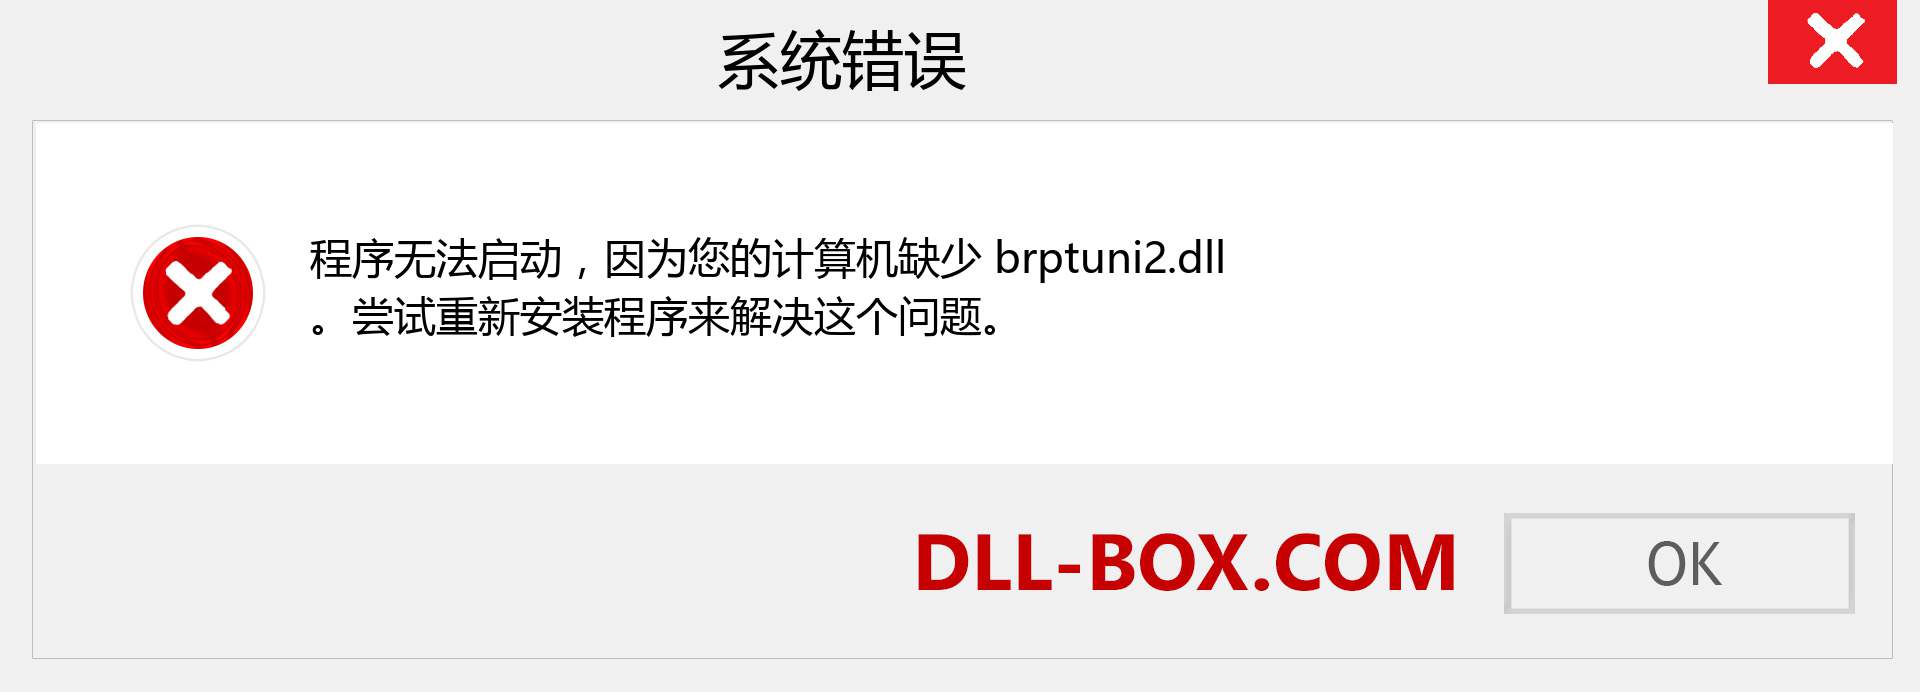 brptuni2.dll 文件丢失？。 适用于 Windows 7、8、10 的下载 - 修复 Windows、照片、图像上的 brptuni2 dll 丢失错误